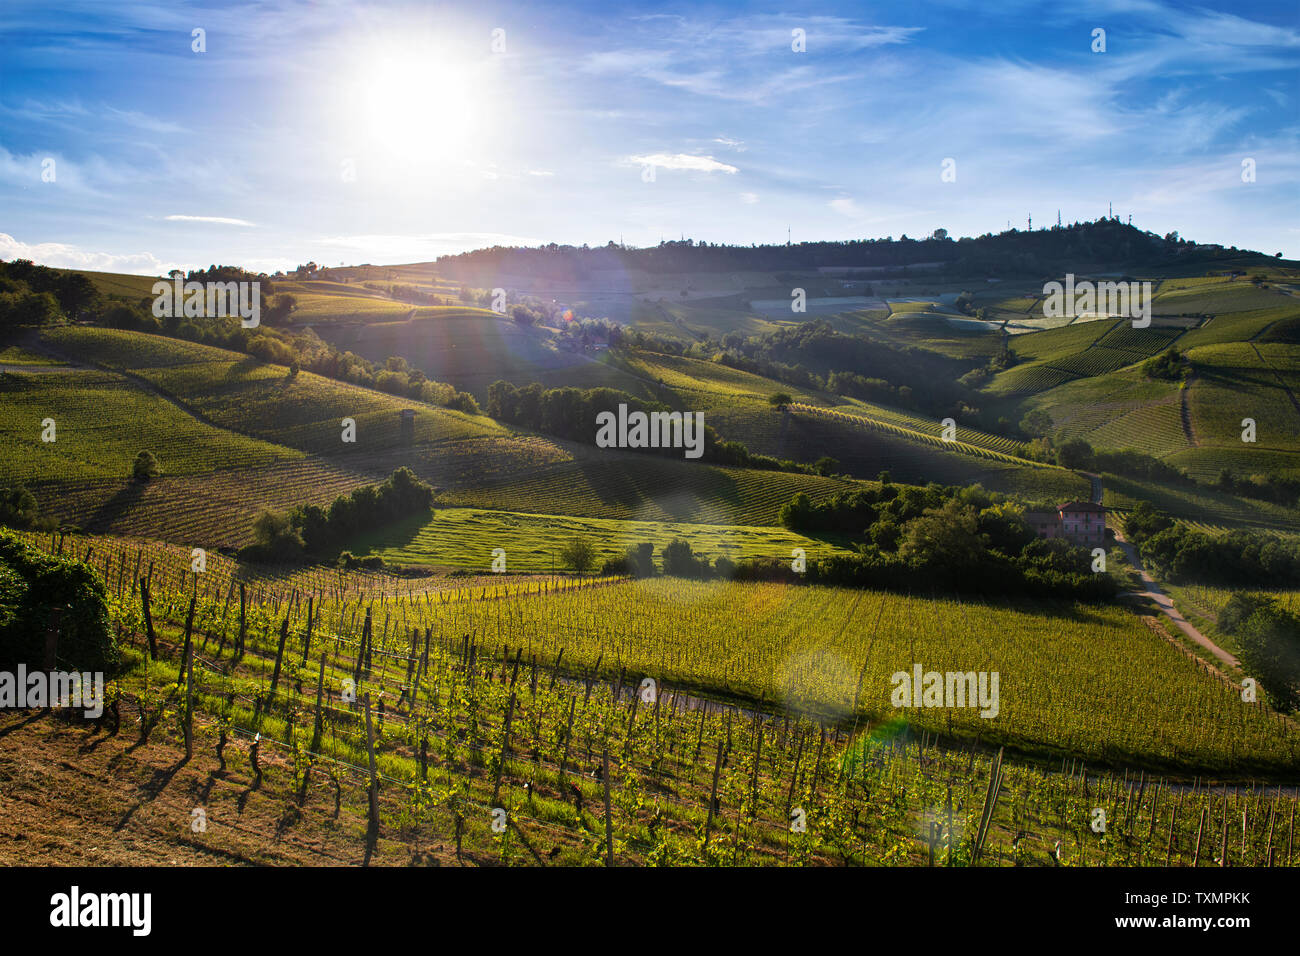 Merveilleux vignobles et de bois sur la colline Sarmassa situé dans la municipalité de Barolo Piémont Italie, le ciel est bleu avec de beaux nuages Banque D'Images